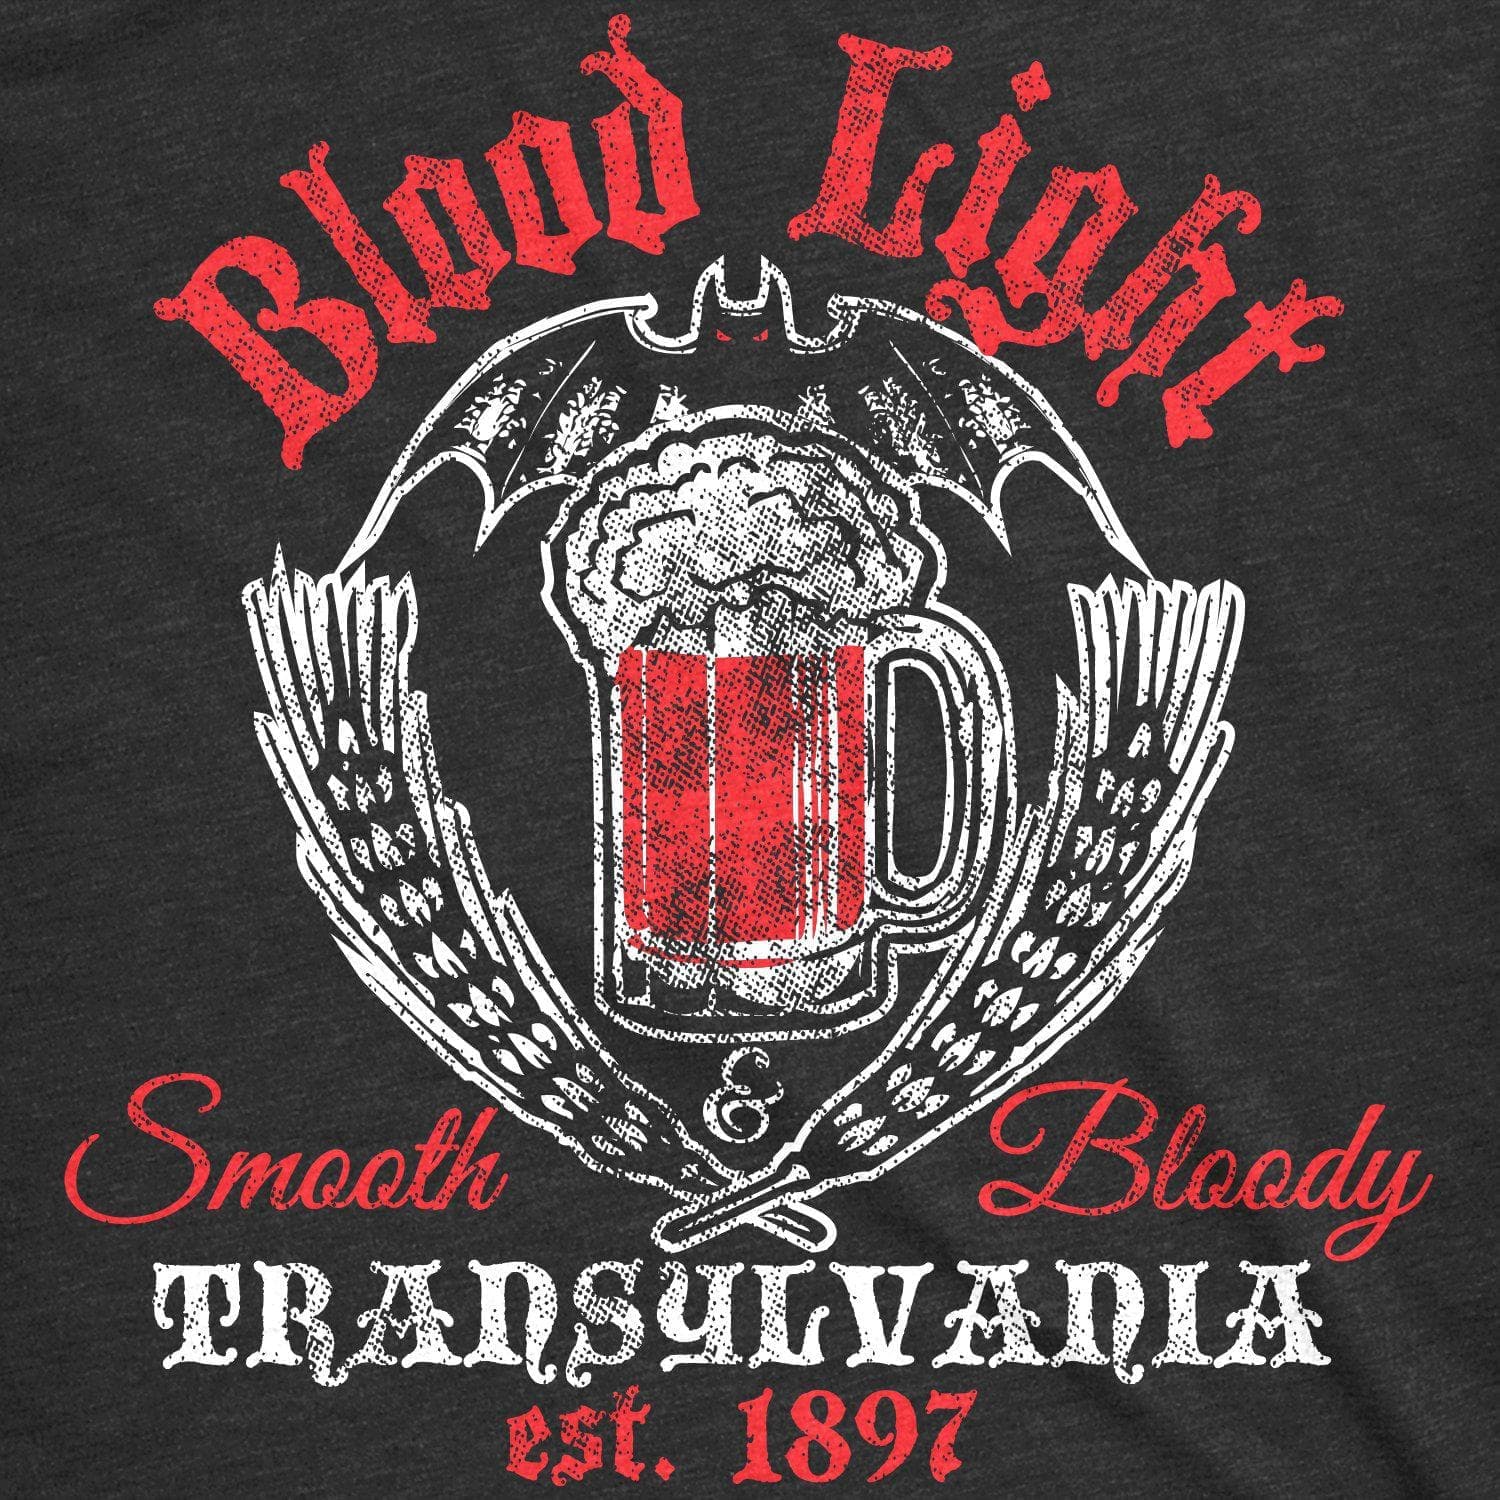 Blood Light Men's Tshirt - Crazy Dog T-Shirts